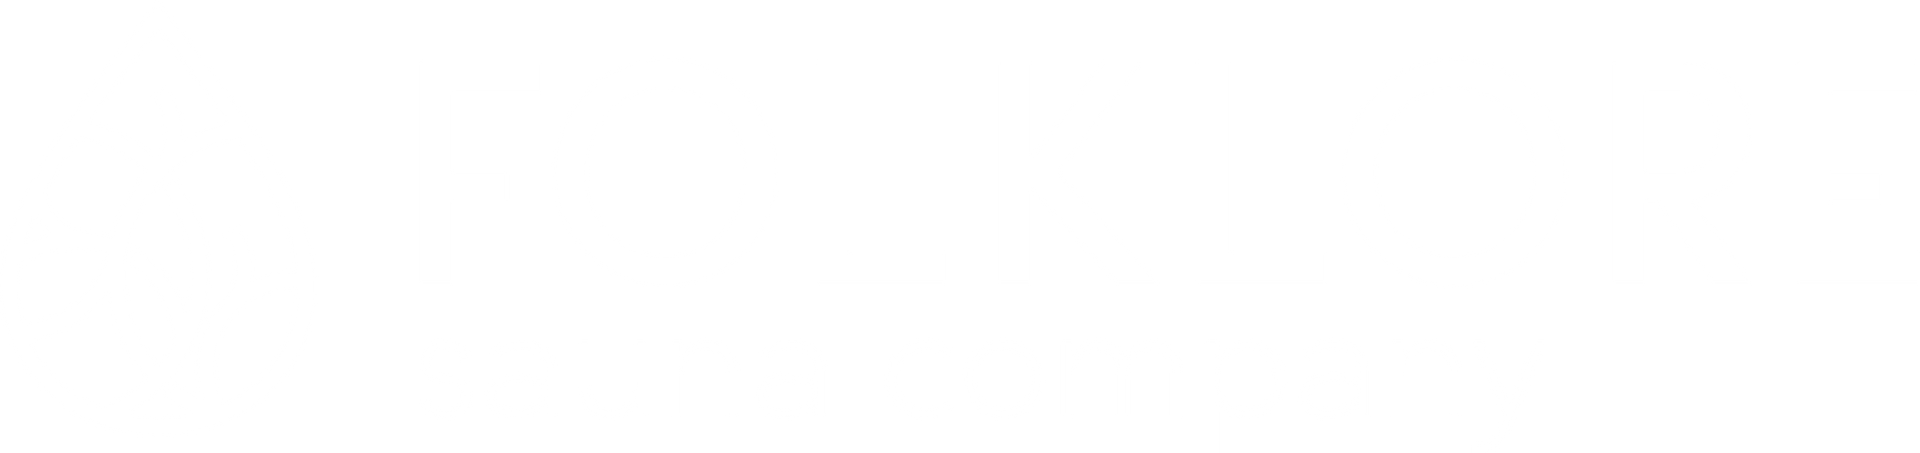 Folklore Sauna Company LOGO